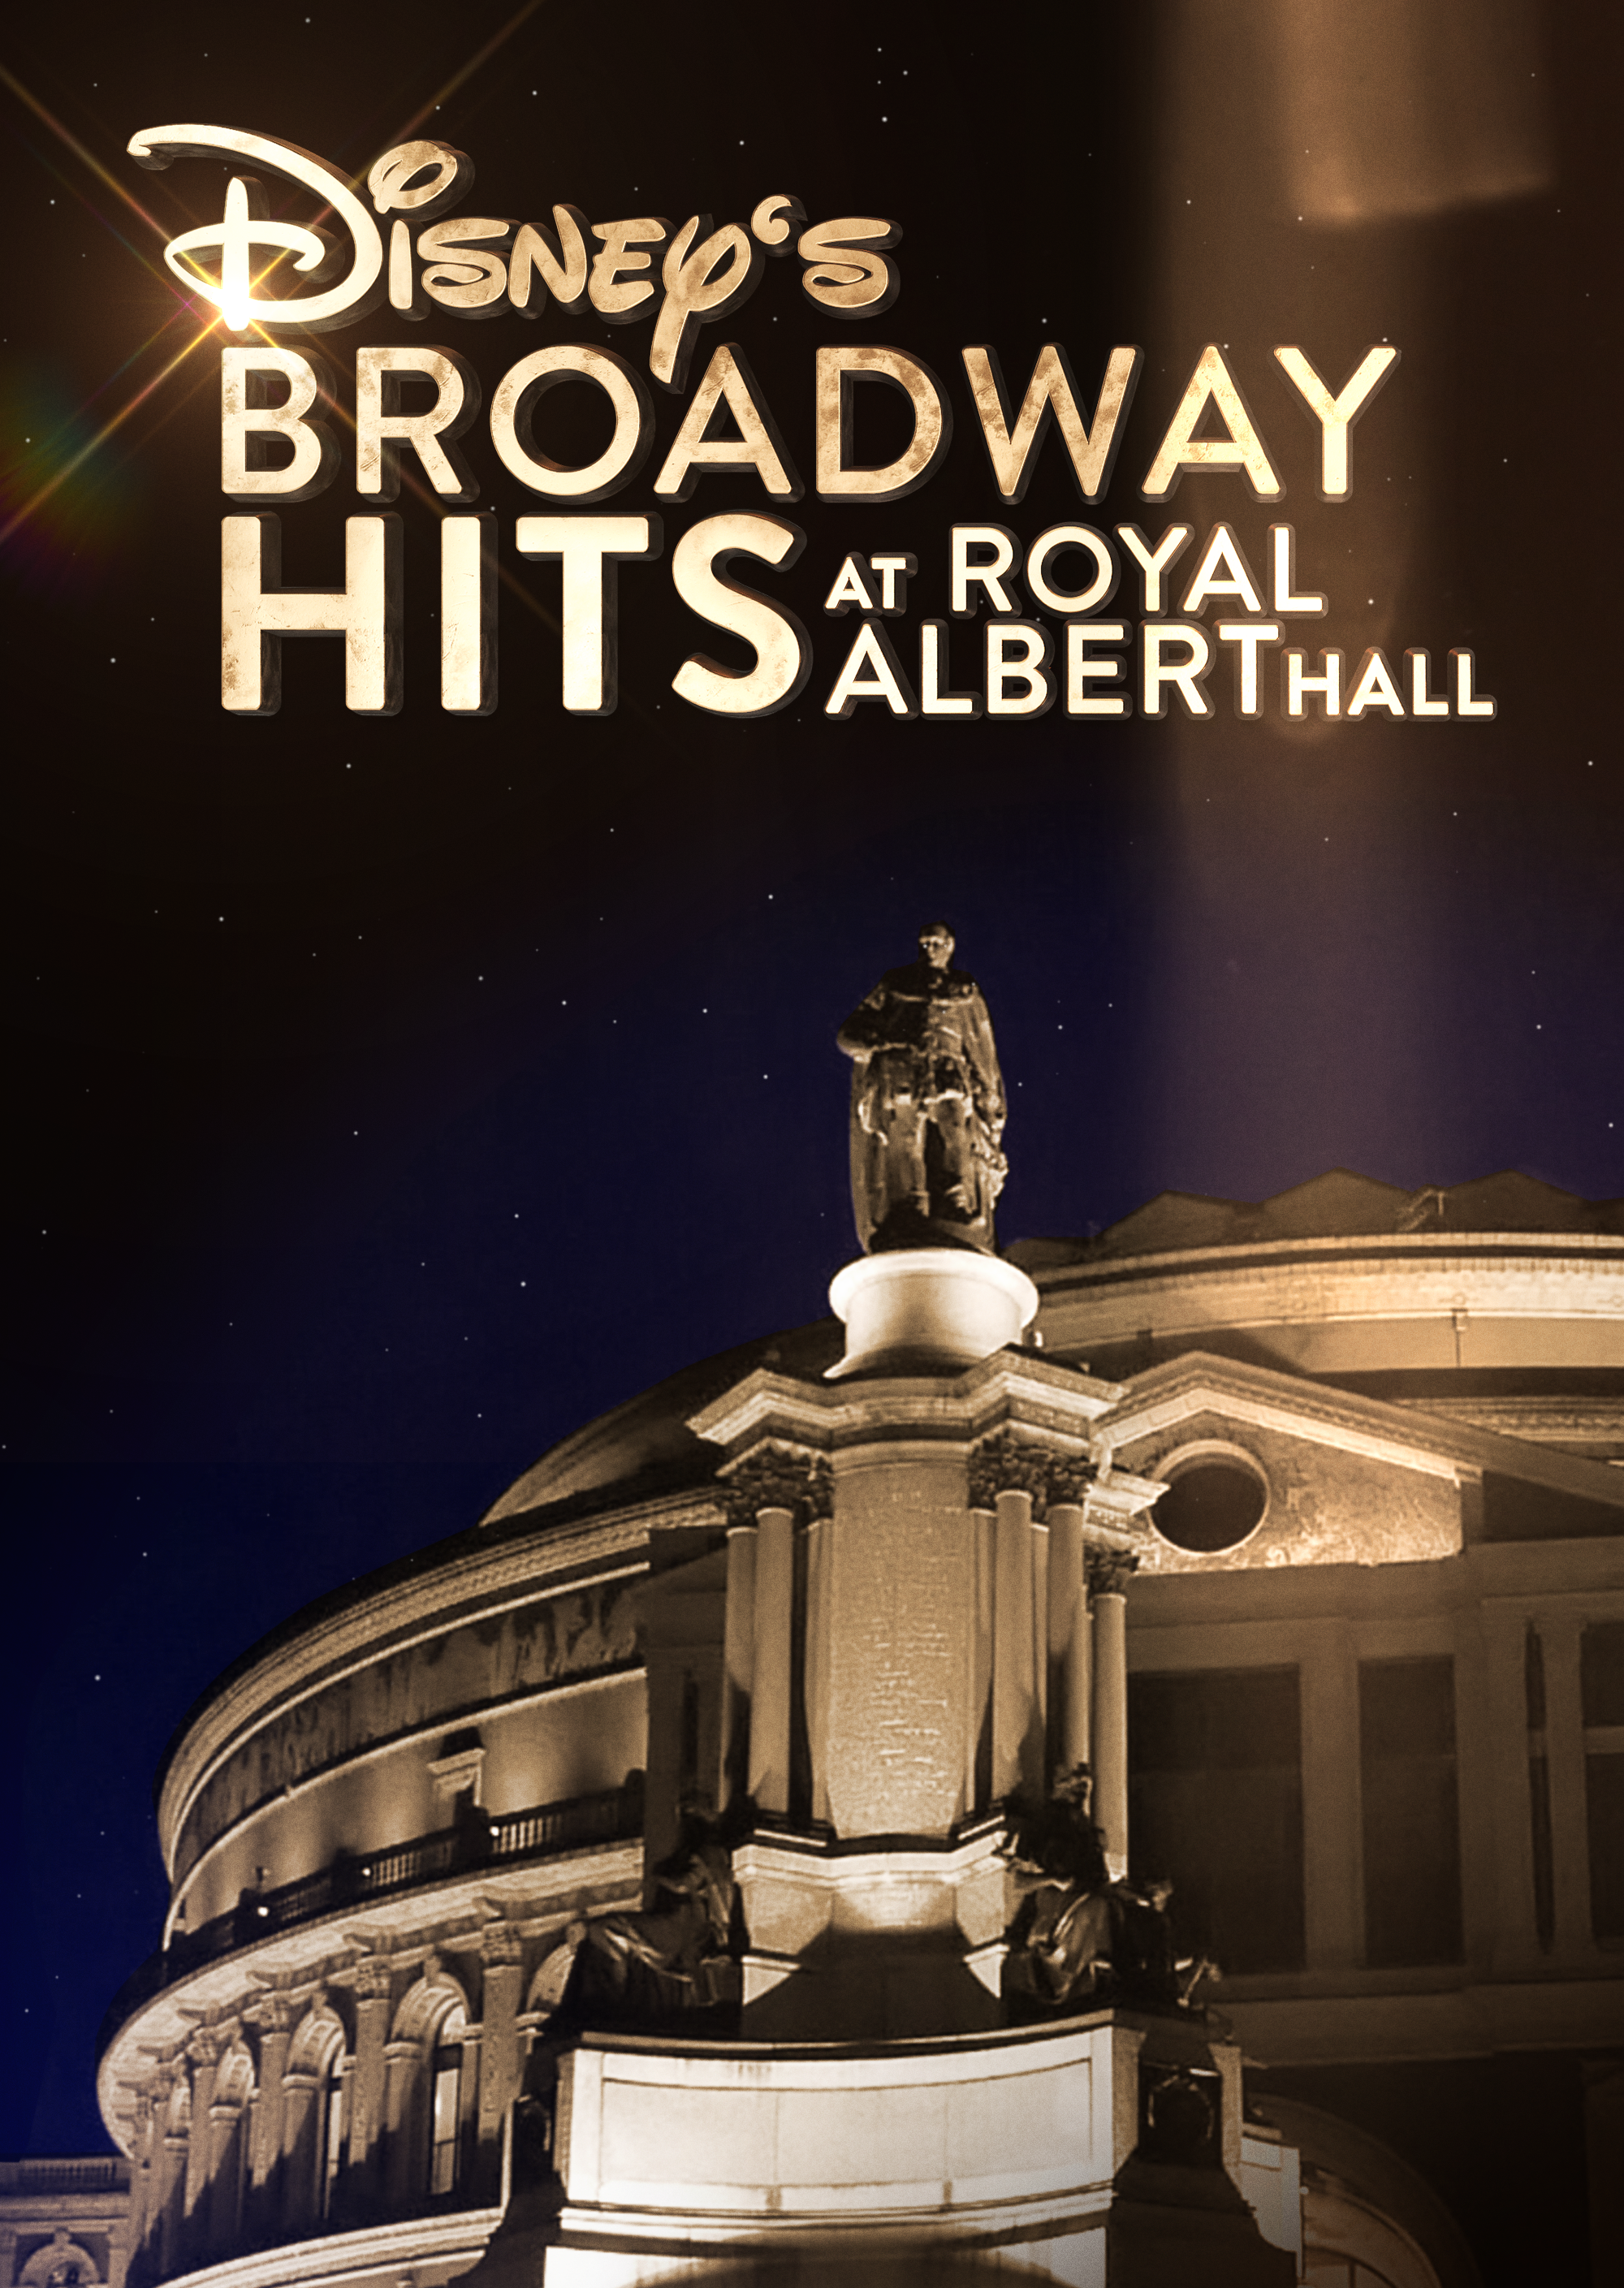 Disneys Broadway Hits at Royal Albert Hall